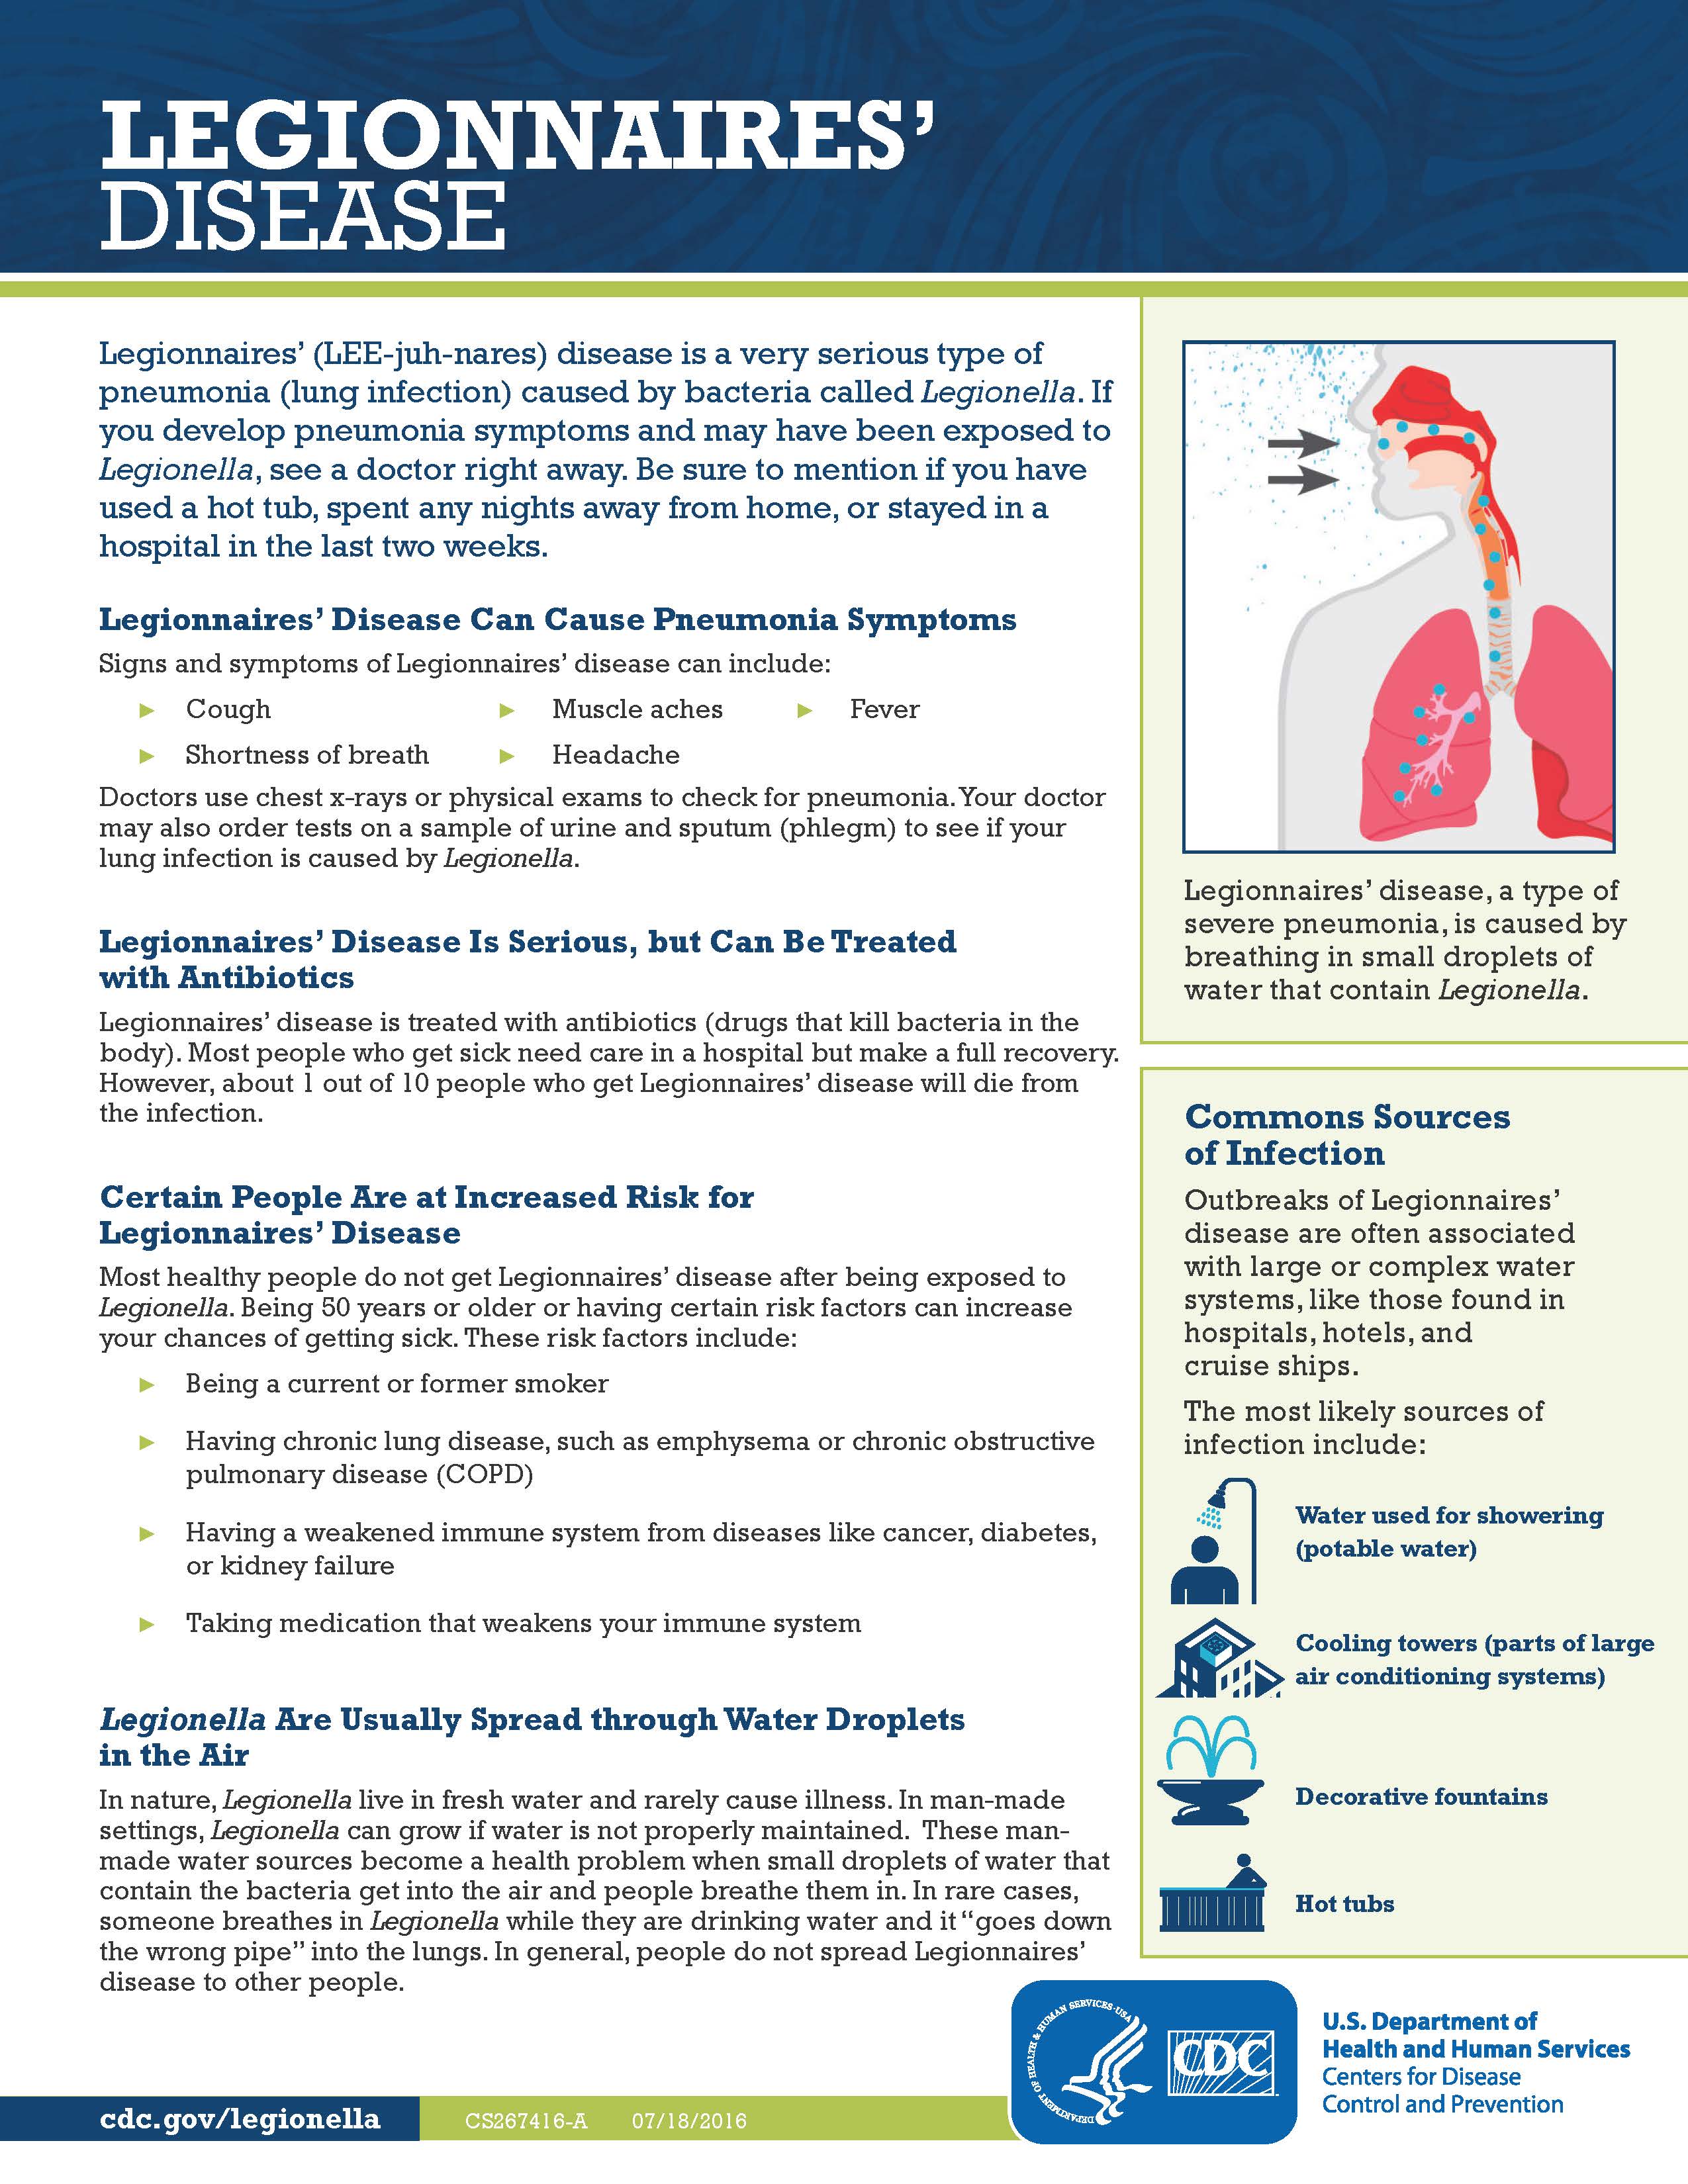 Legionnaires' disease infographic